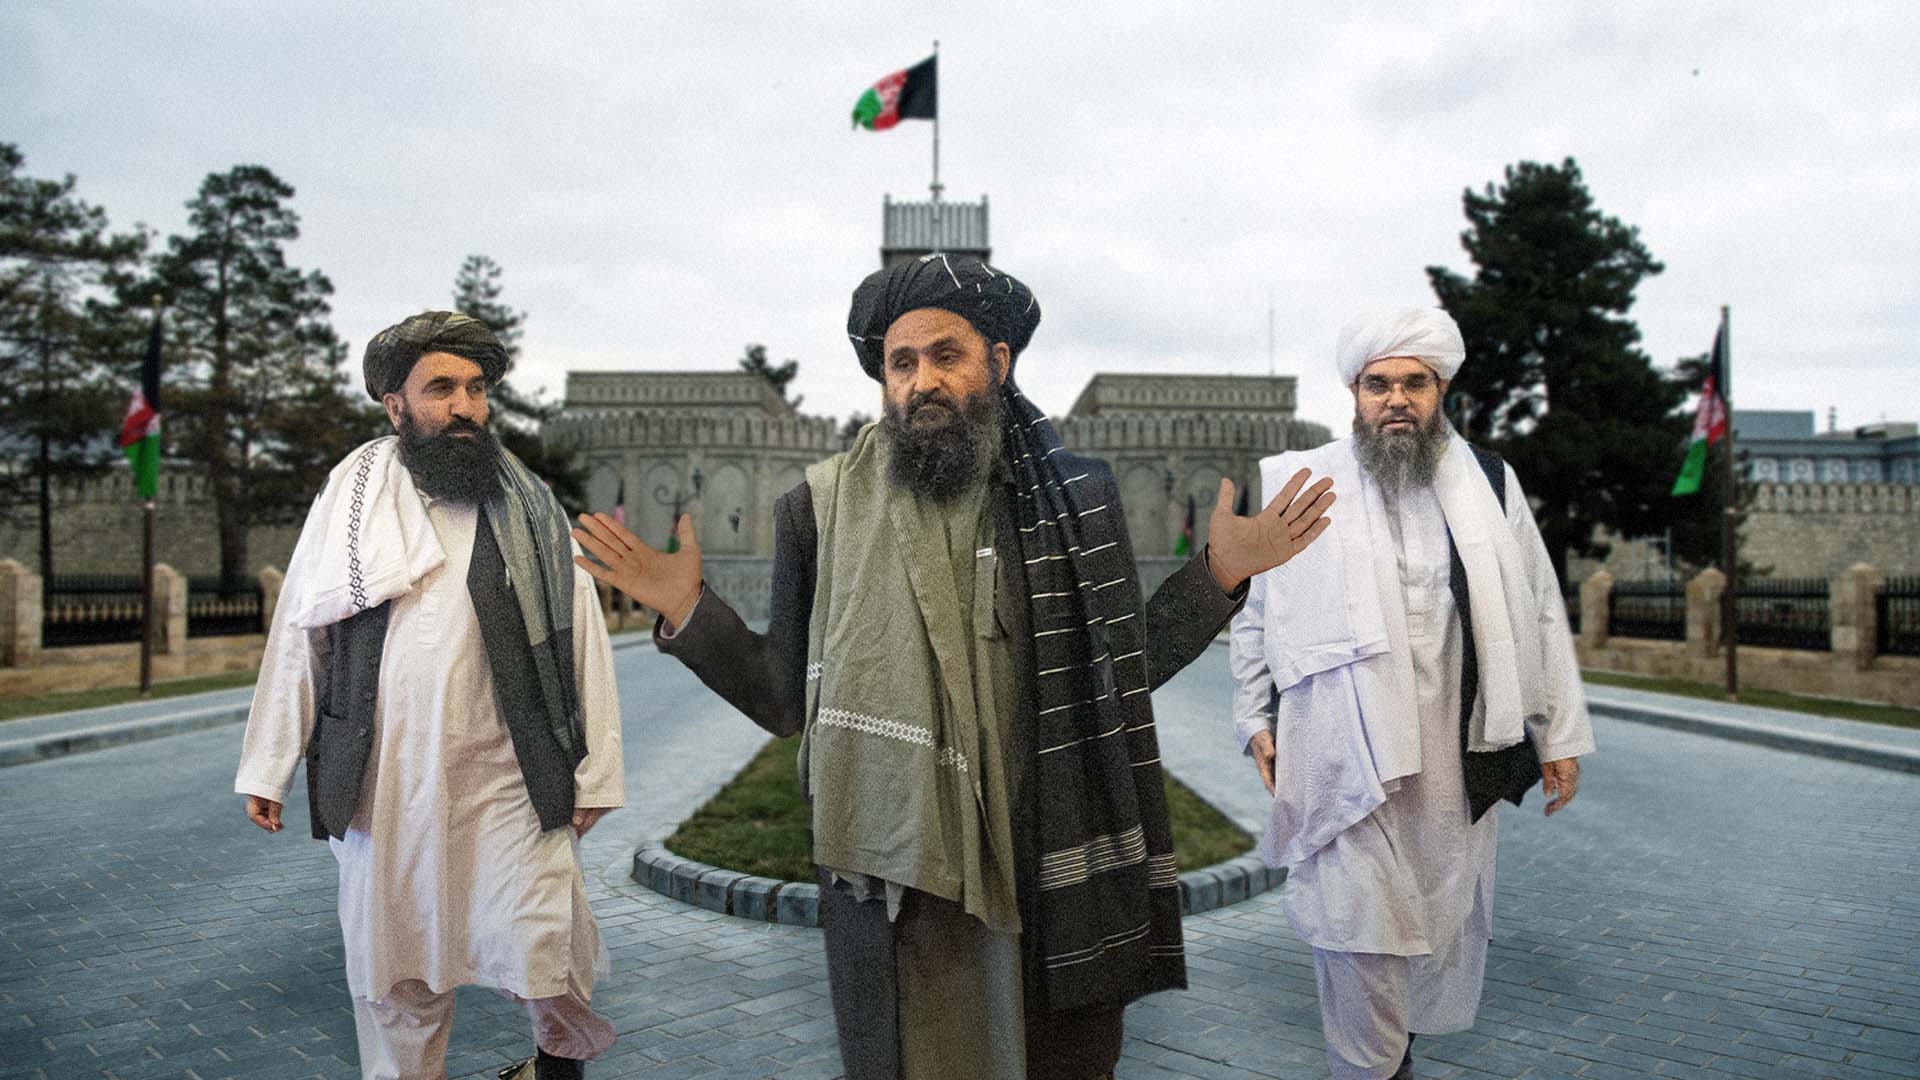 صورة طالبان تنتقد عدم إكمال أمريكا الجميل وترك سجاد أحمر على طريق القصر الرئاسي